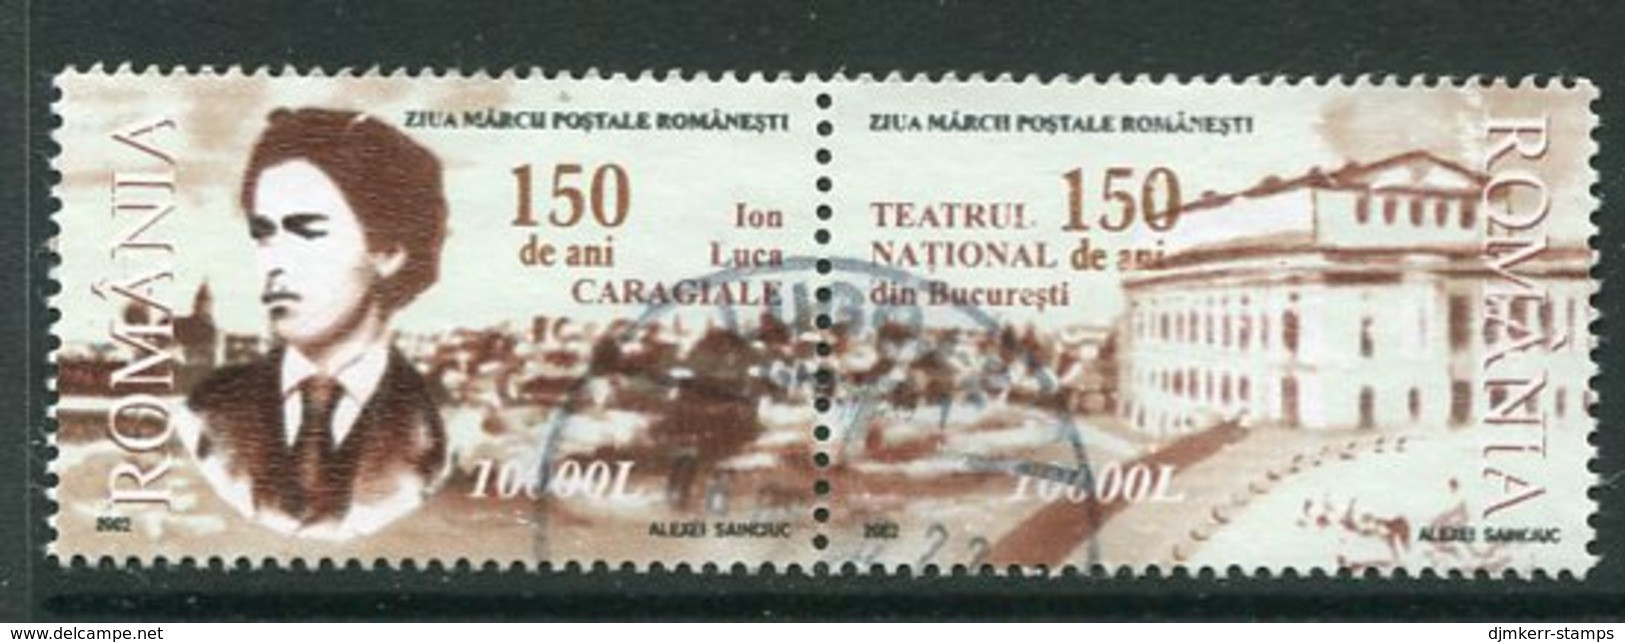 ROMANIA 2002 Caragiale Anniversary Used.  Michel 5670-71 - Usati